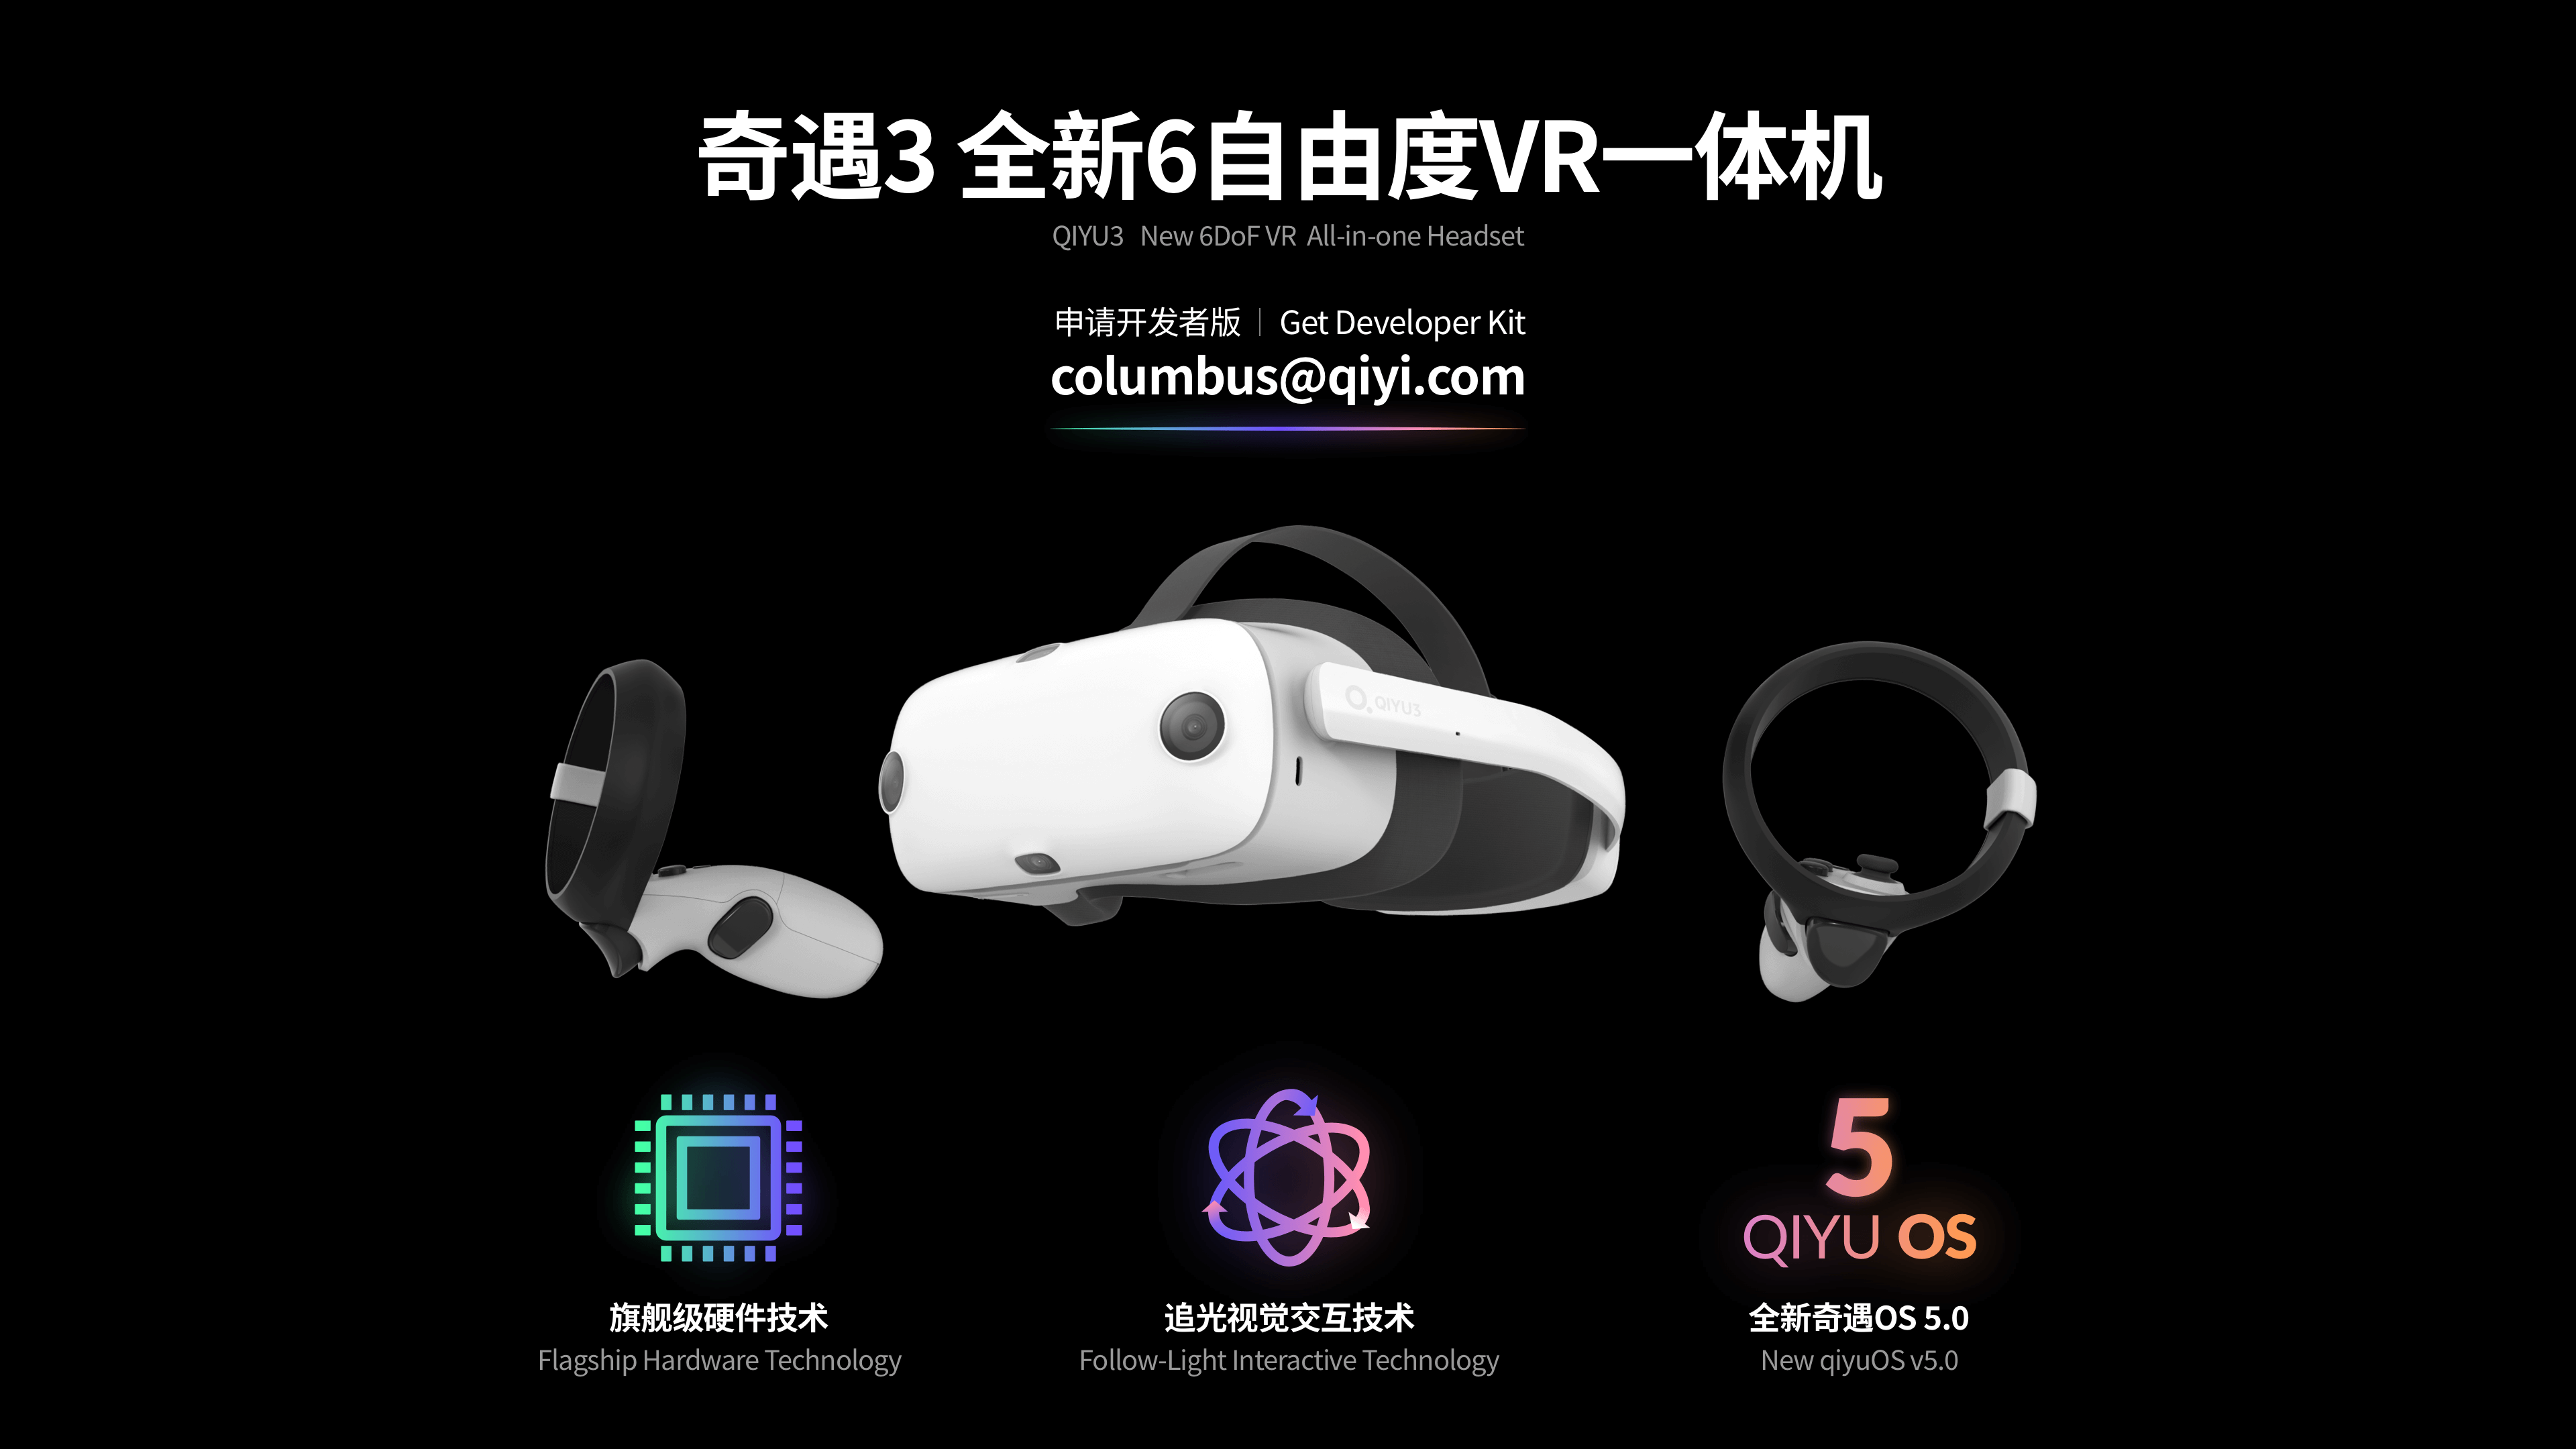 lança primeiro óculos de realidade virtual com tecnologia de Computer da | China 2 Brazil